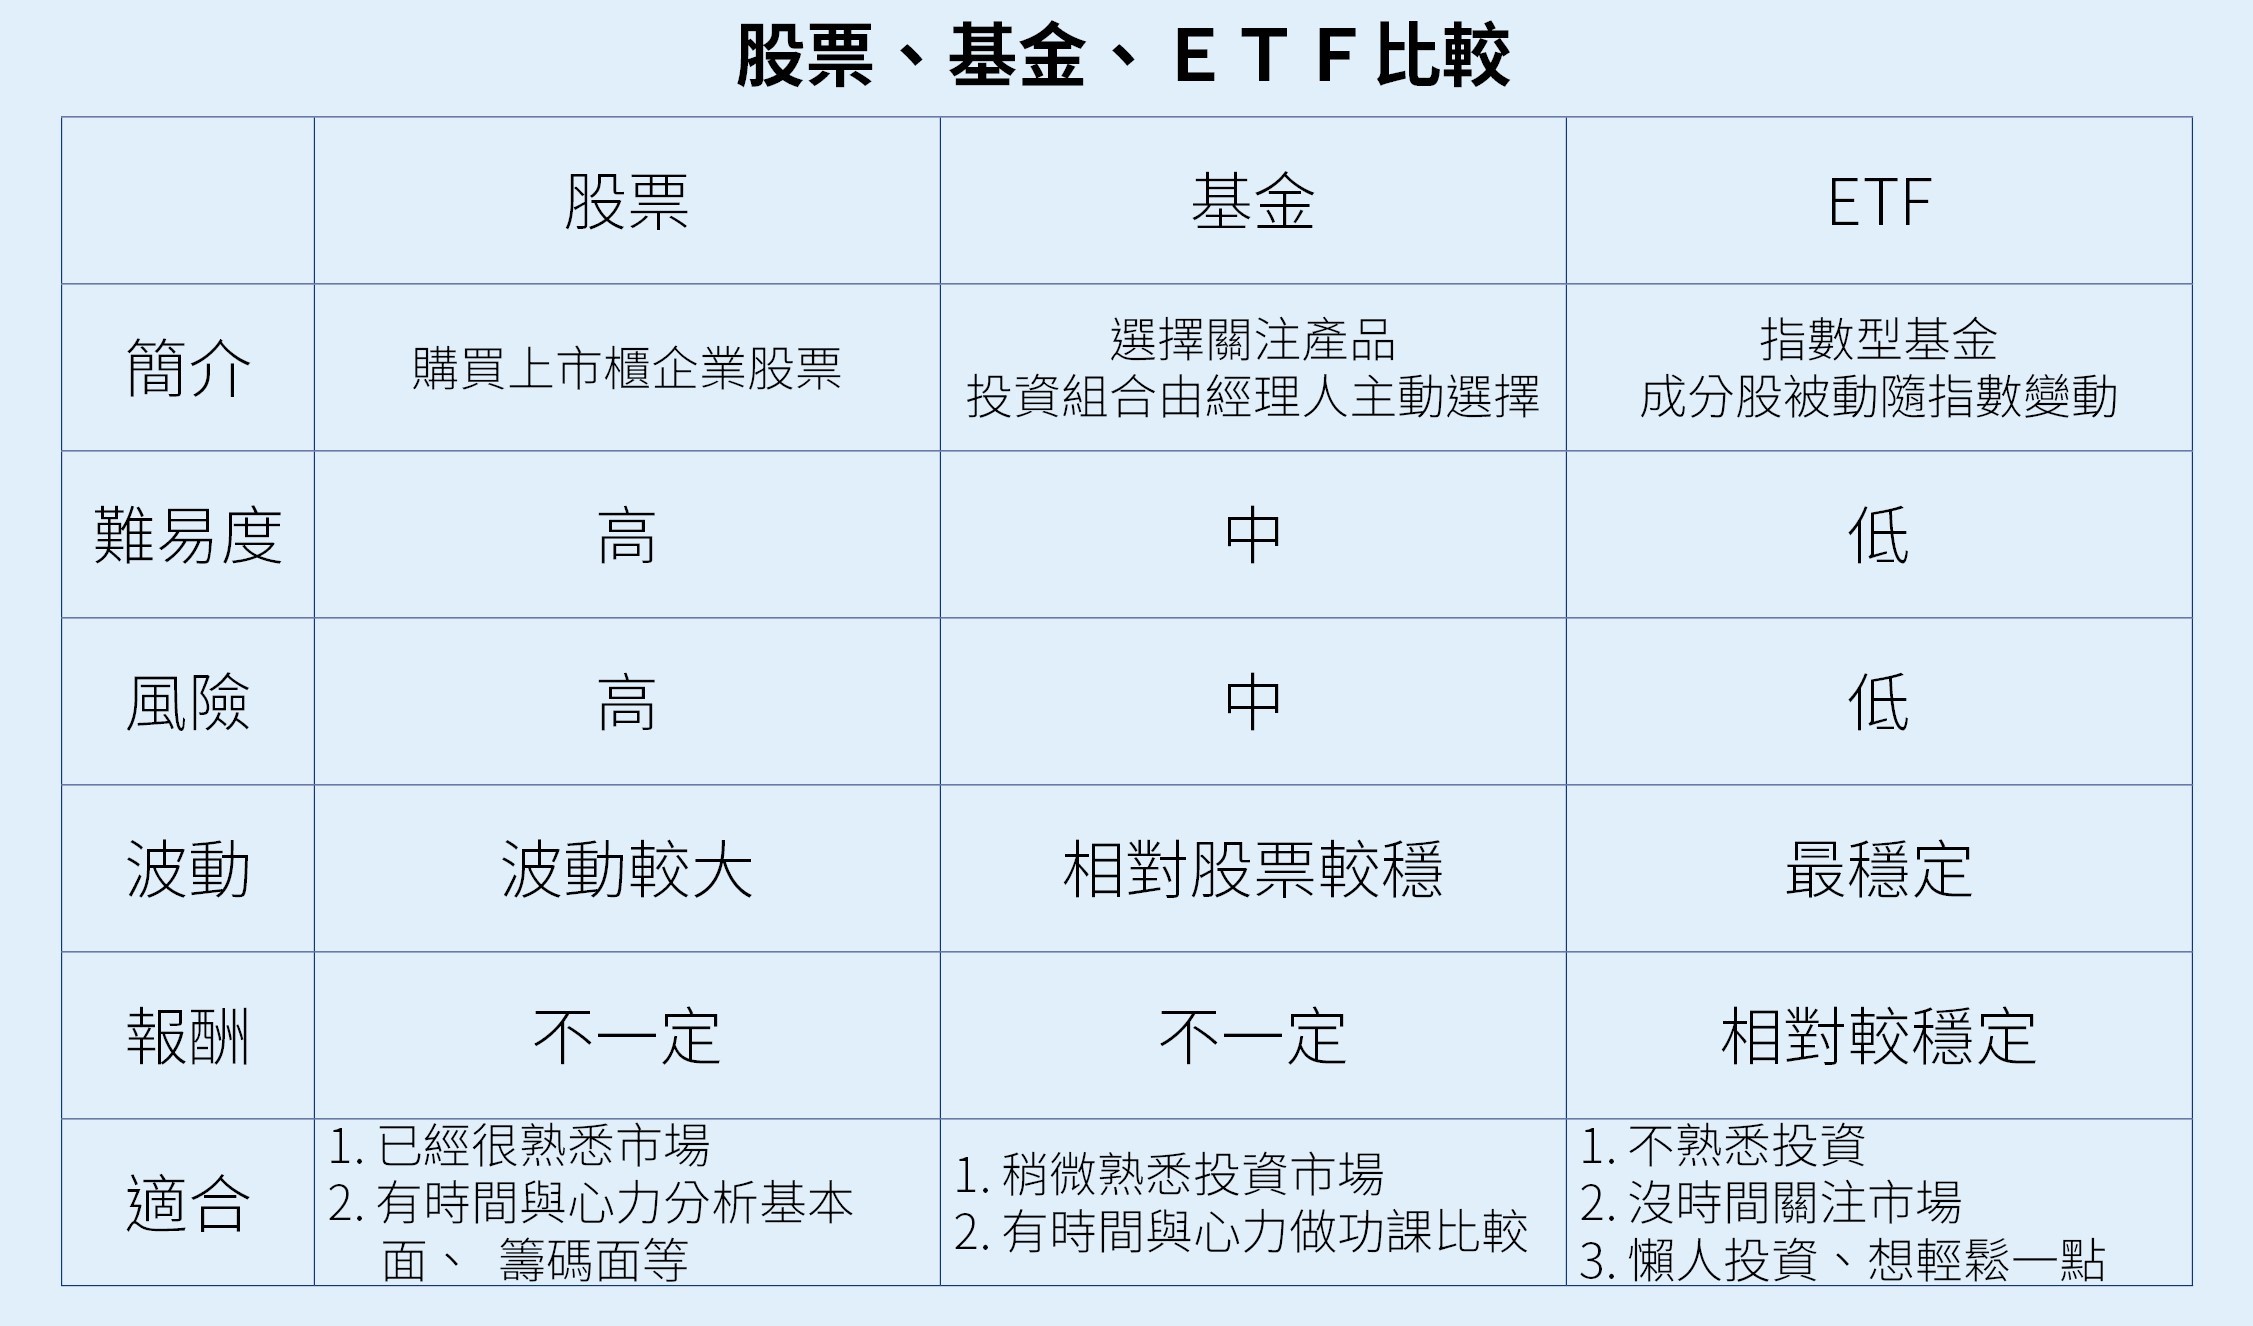 社會新鮮人投資理財術 一張表看懂基金 股票 Etf哪個適合你 Ettoday財經雲 Ettoday新聞雲